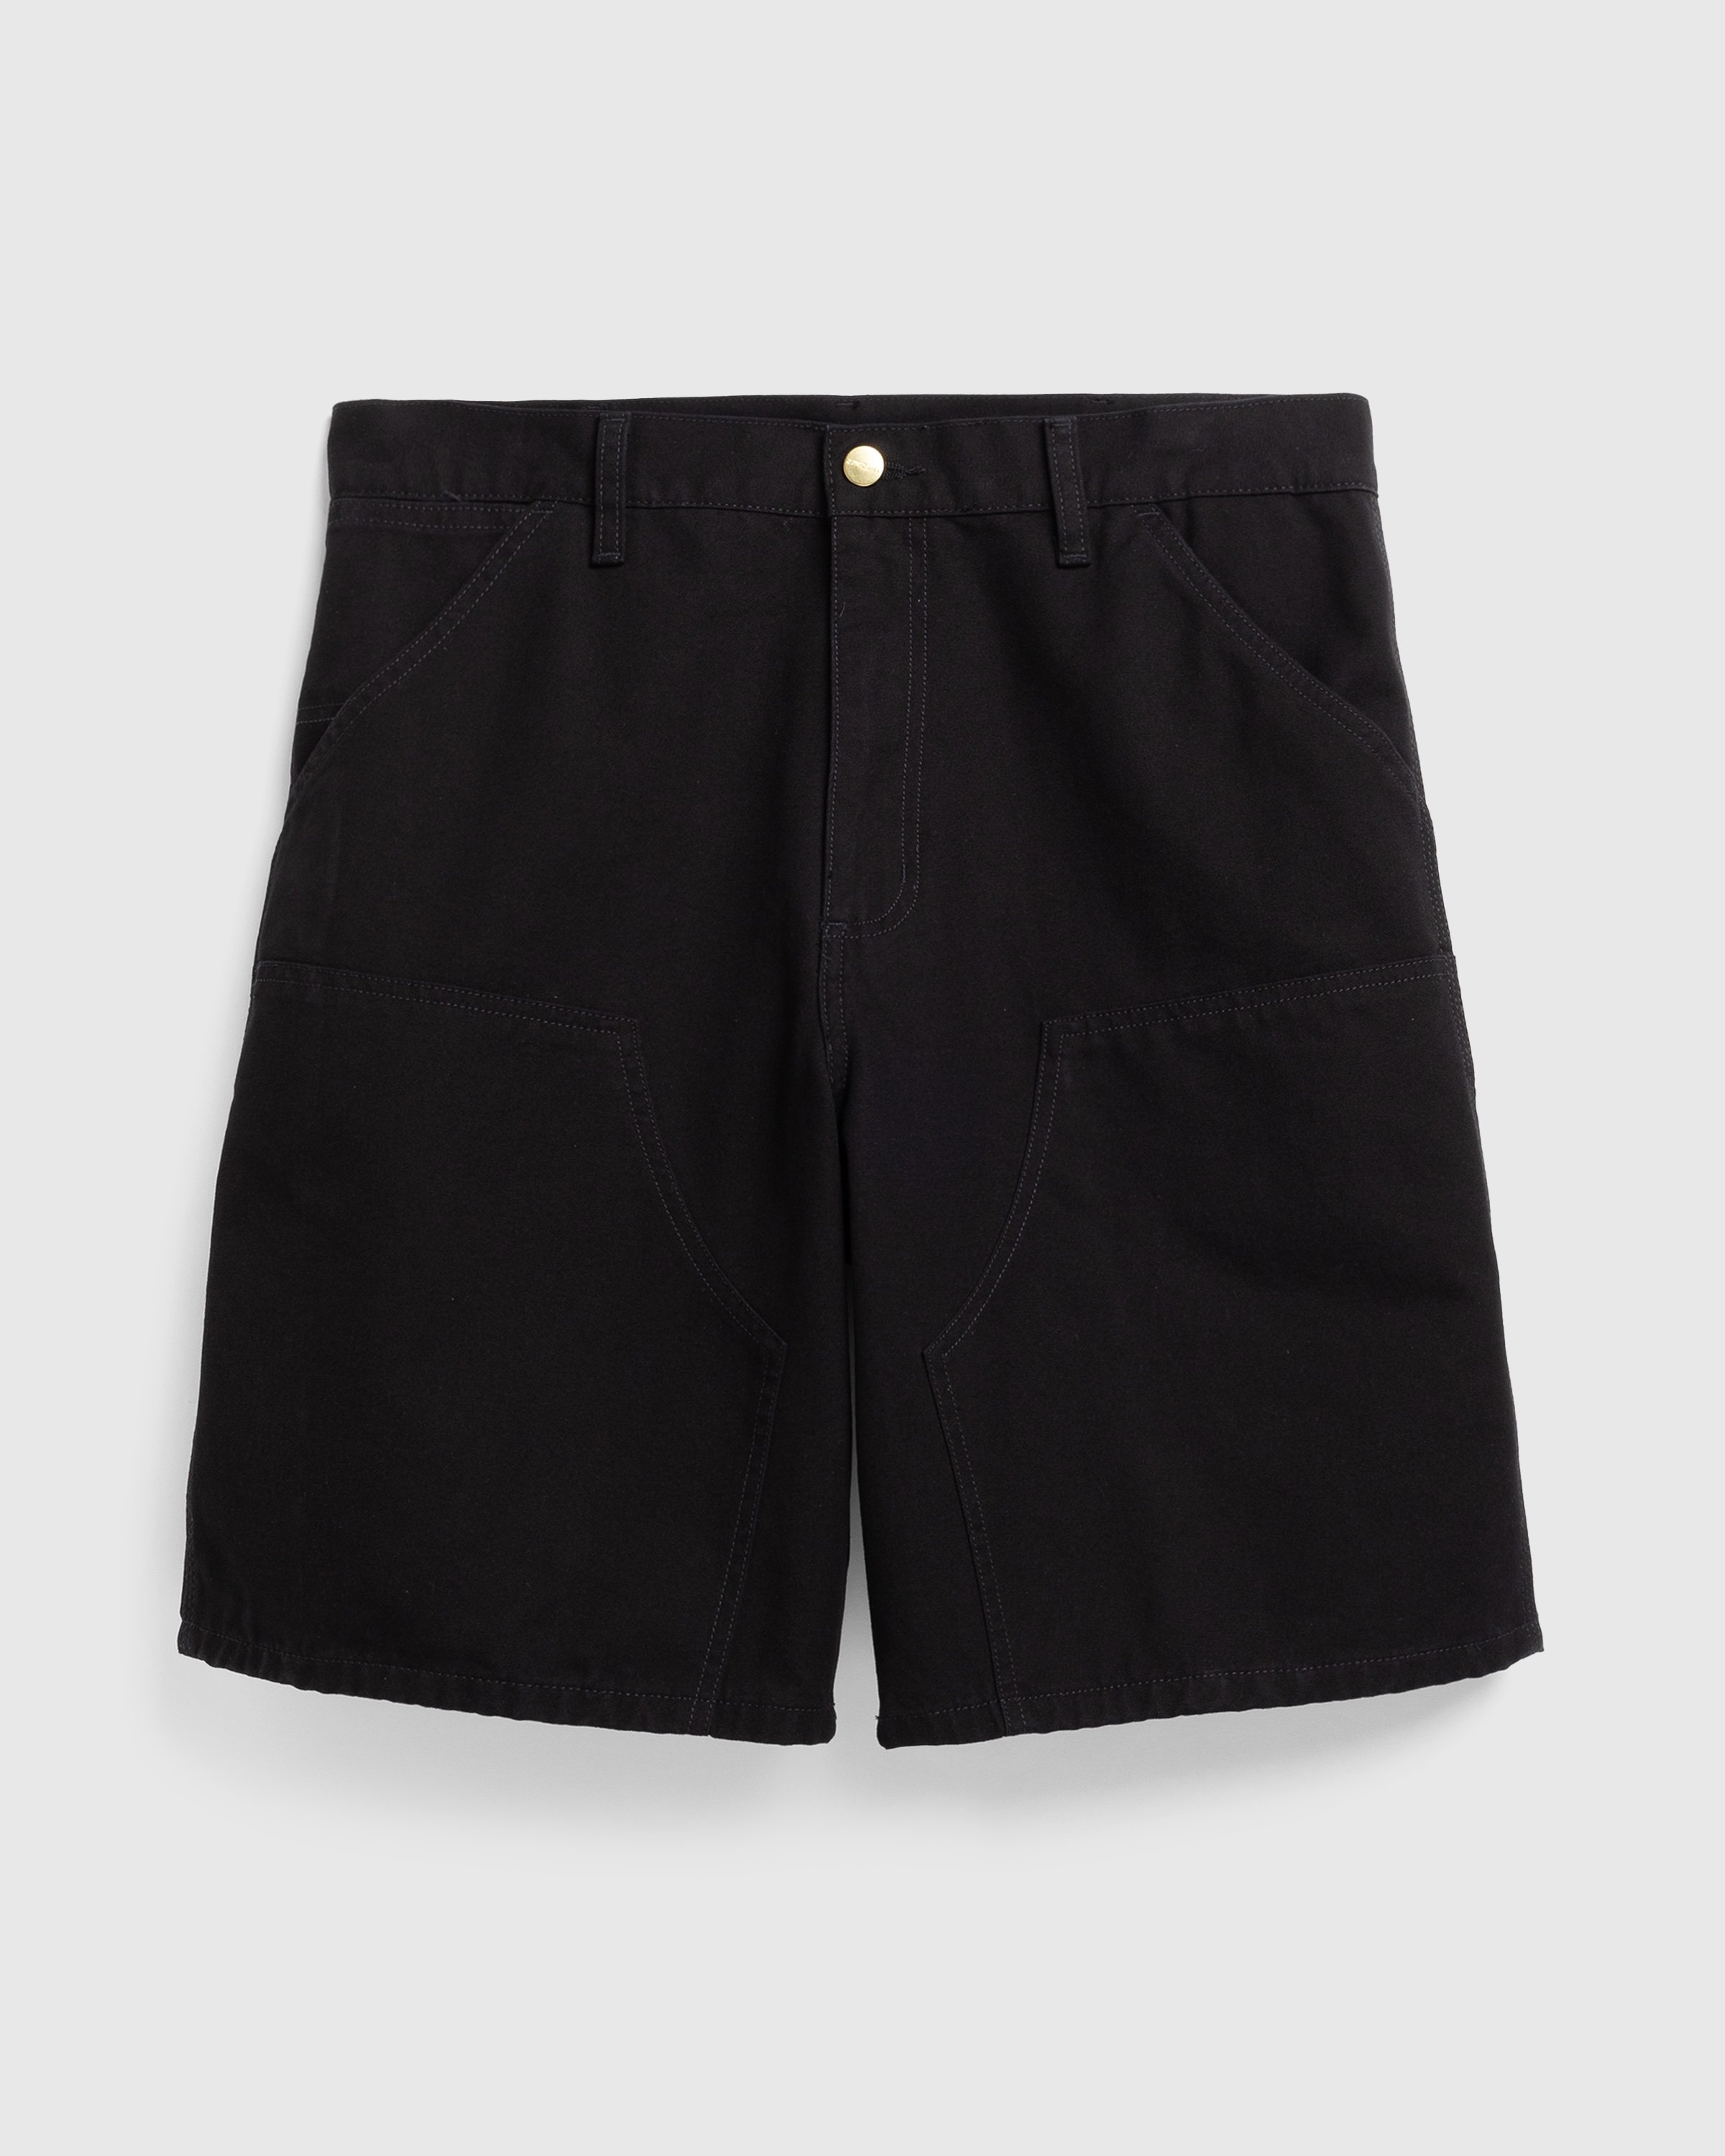 Carhartt WIP - Double Knee Short Black /rinsed - Clothing - Black - Image 1